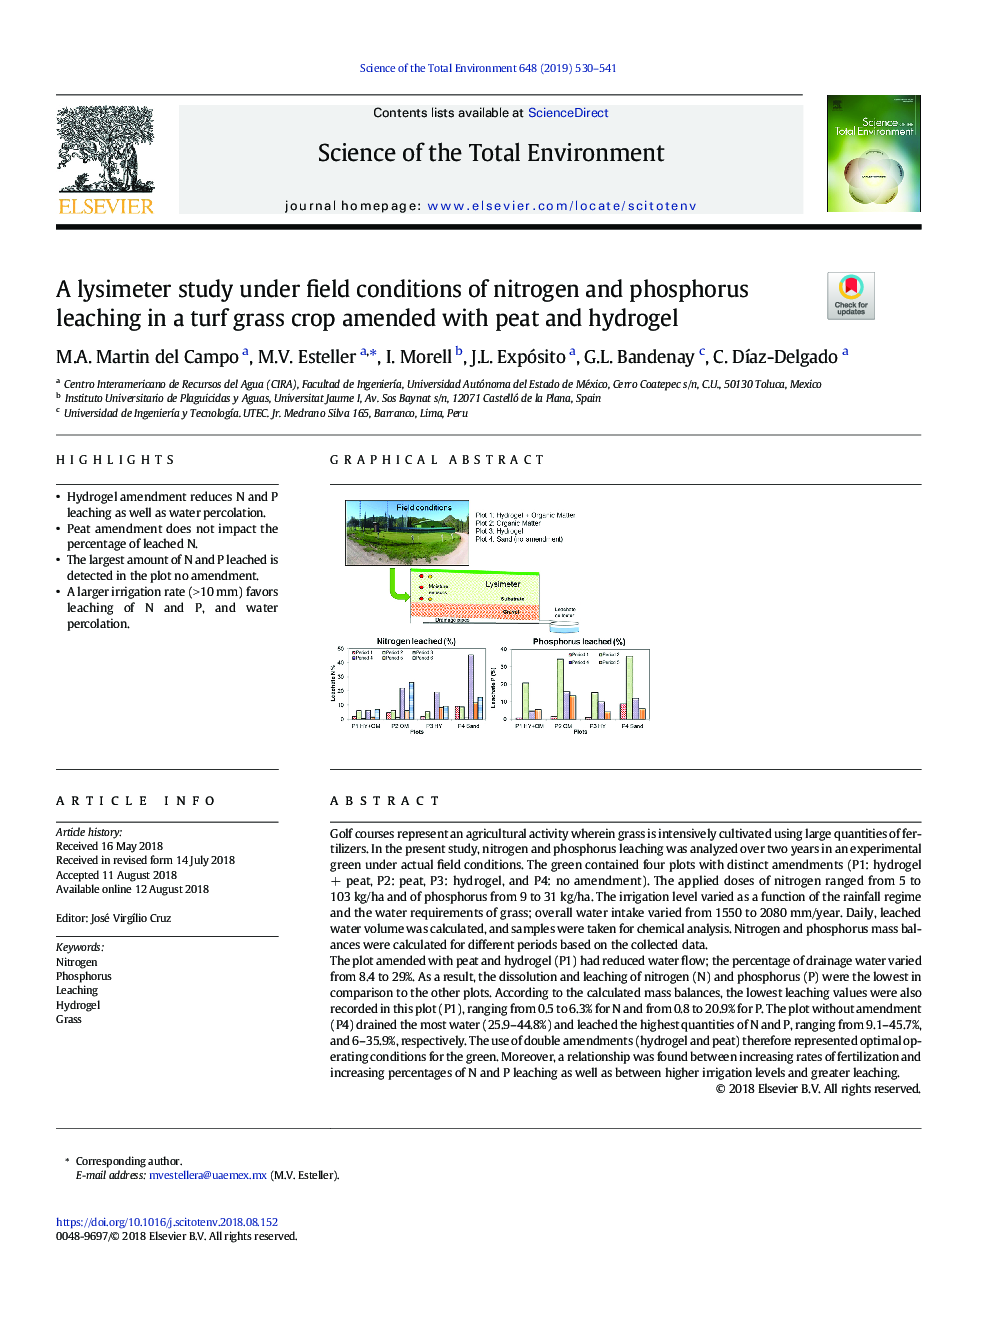 مطالعهی لیزیمتر در شرایط مزرعهای نیتروژن و اشباع فسفر در گیاه چمن زارهای اصلاح شده با توربین و هیدروژل